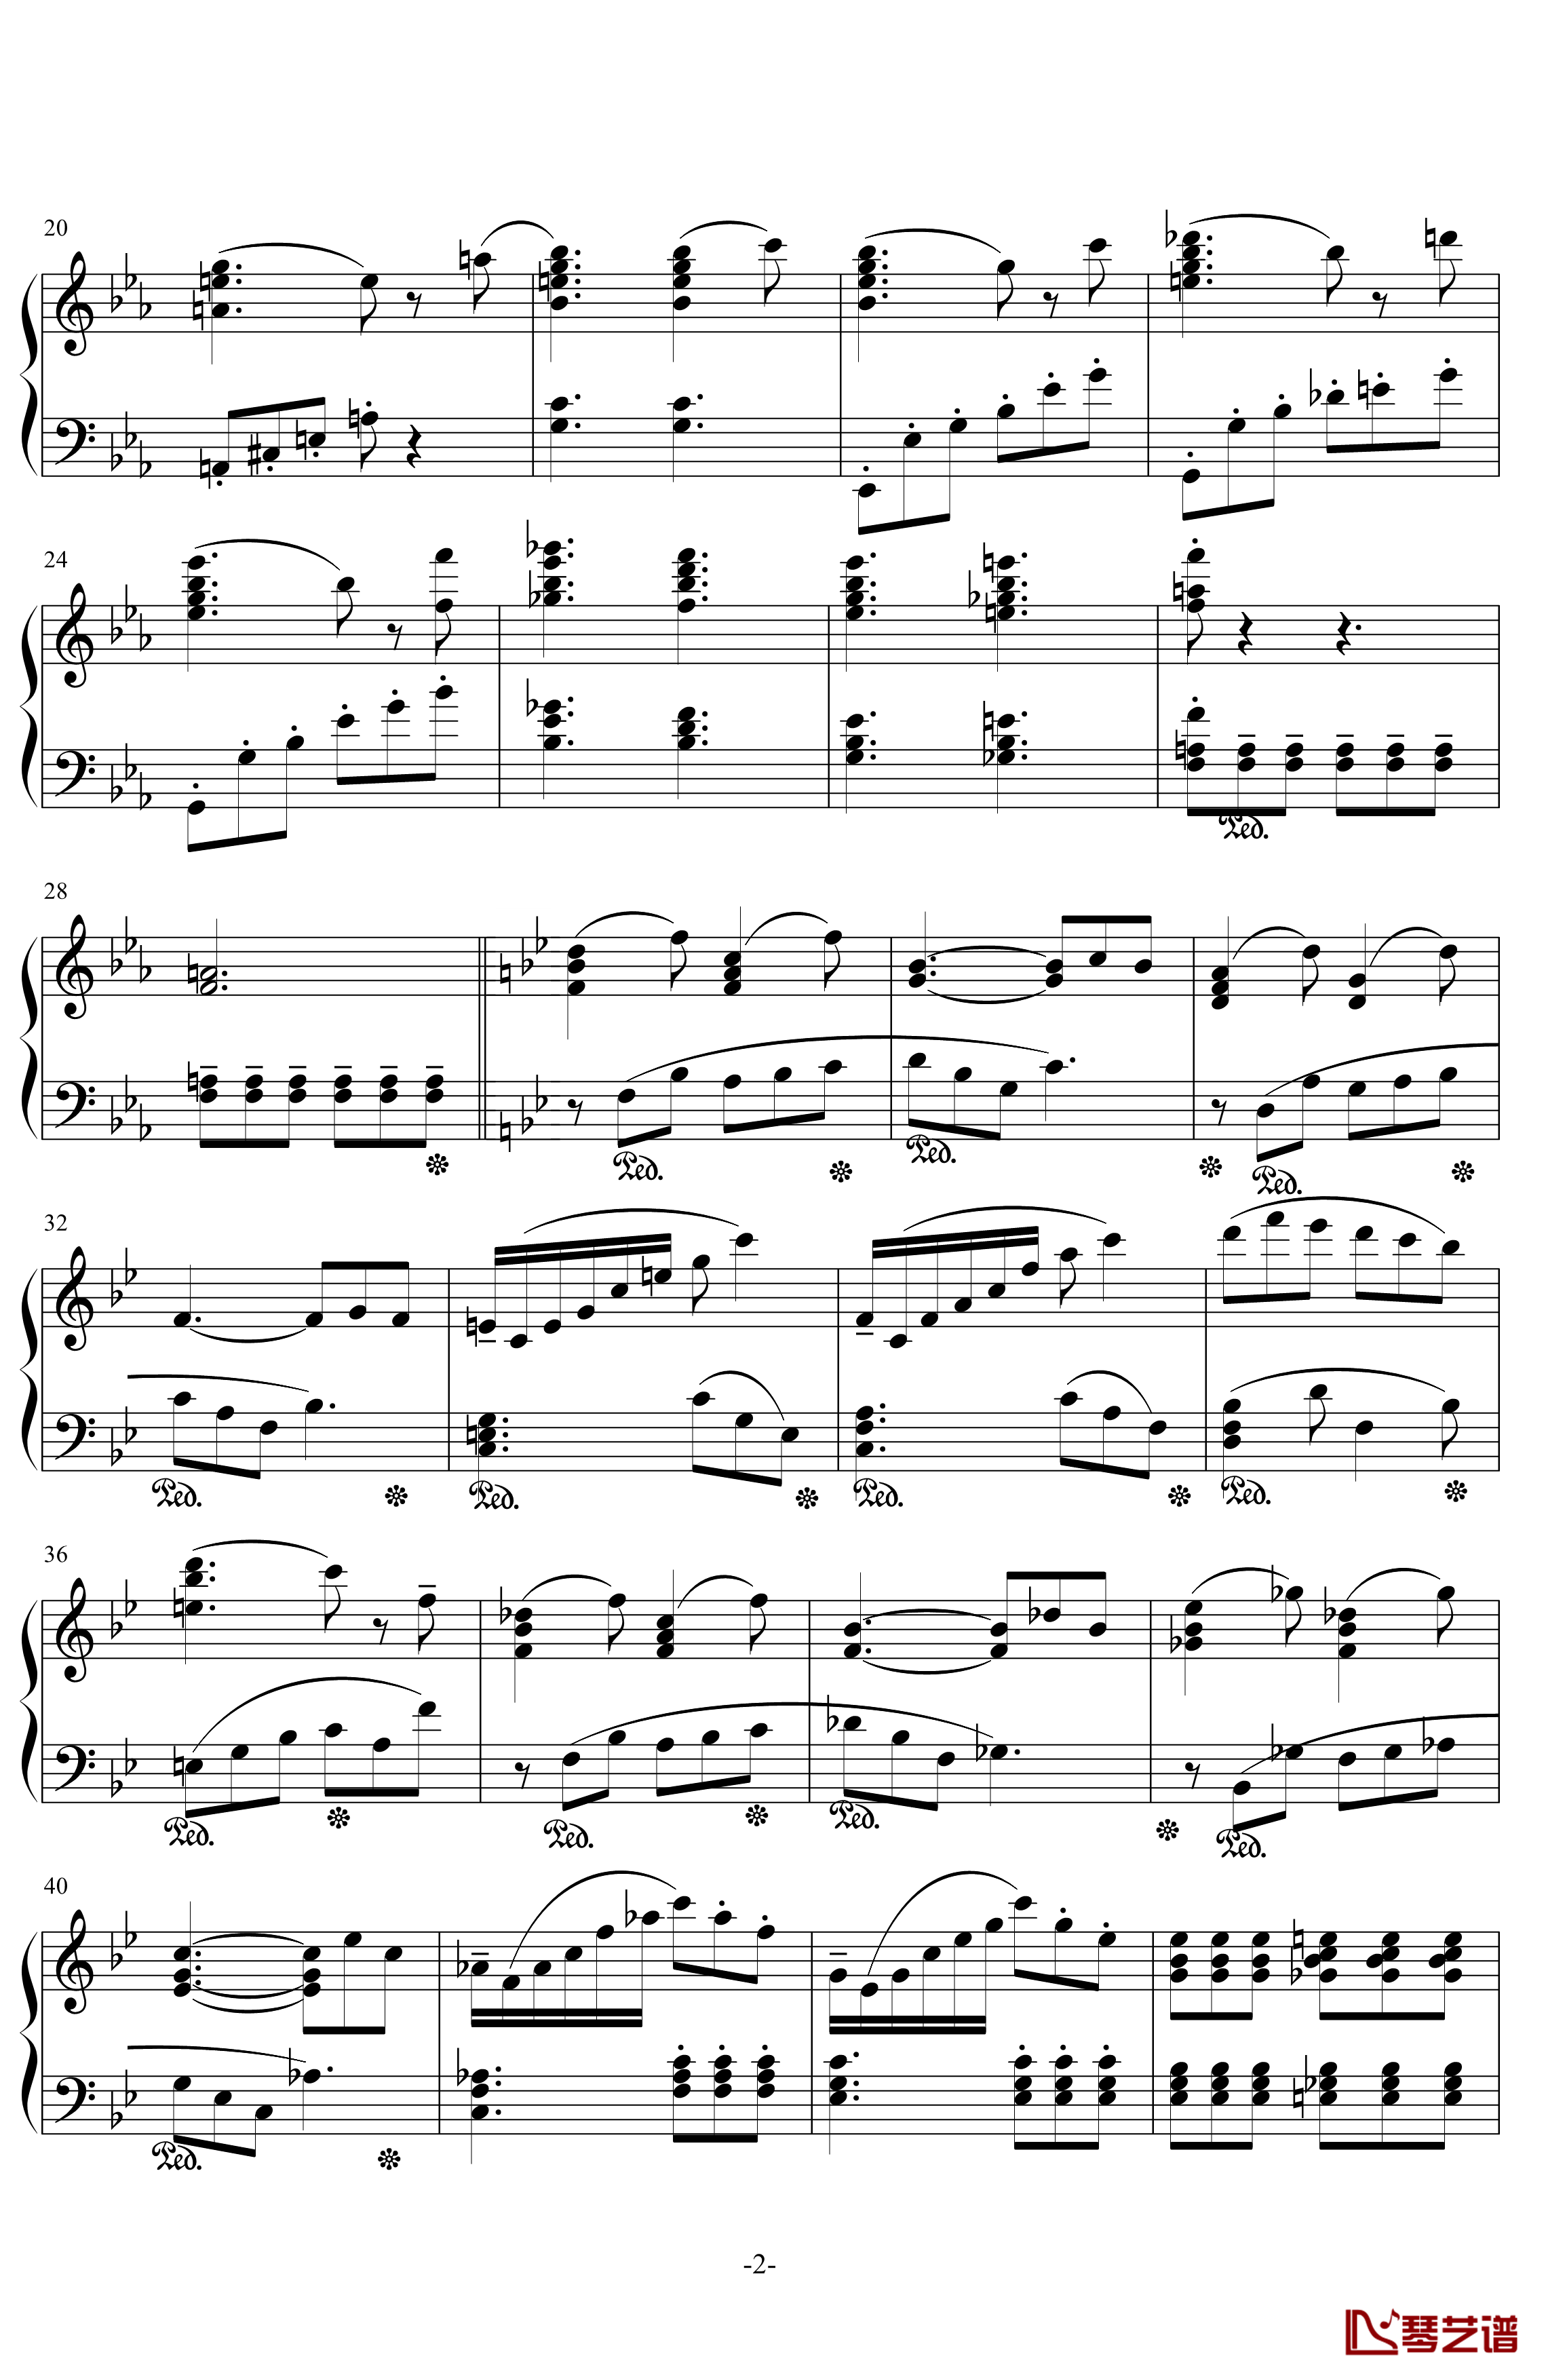 降E大调钢琴奏鸣曲钢琴谱-第1乐章-.伊dên-H202